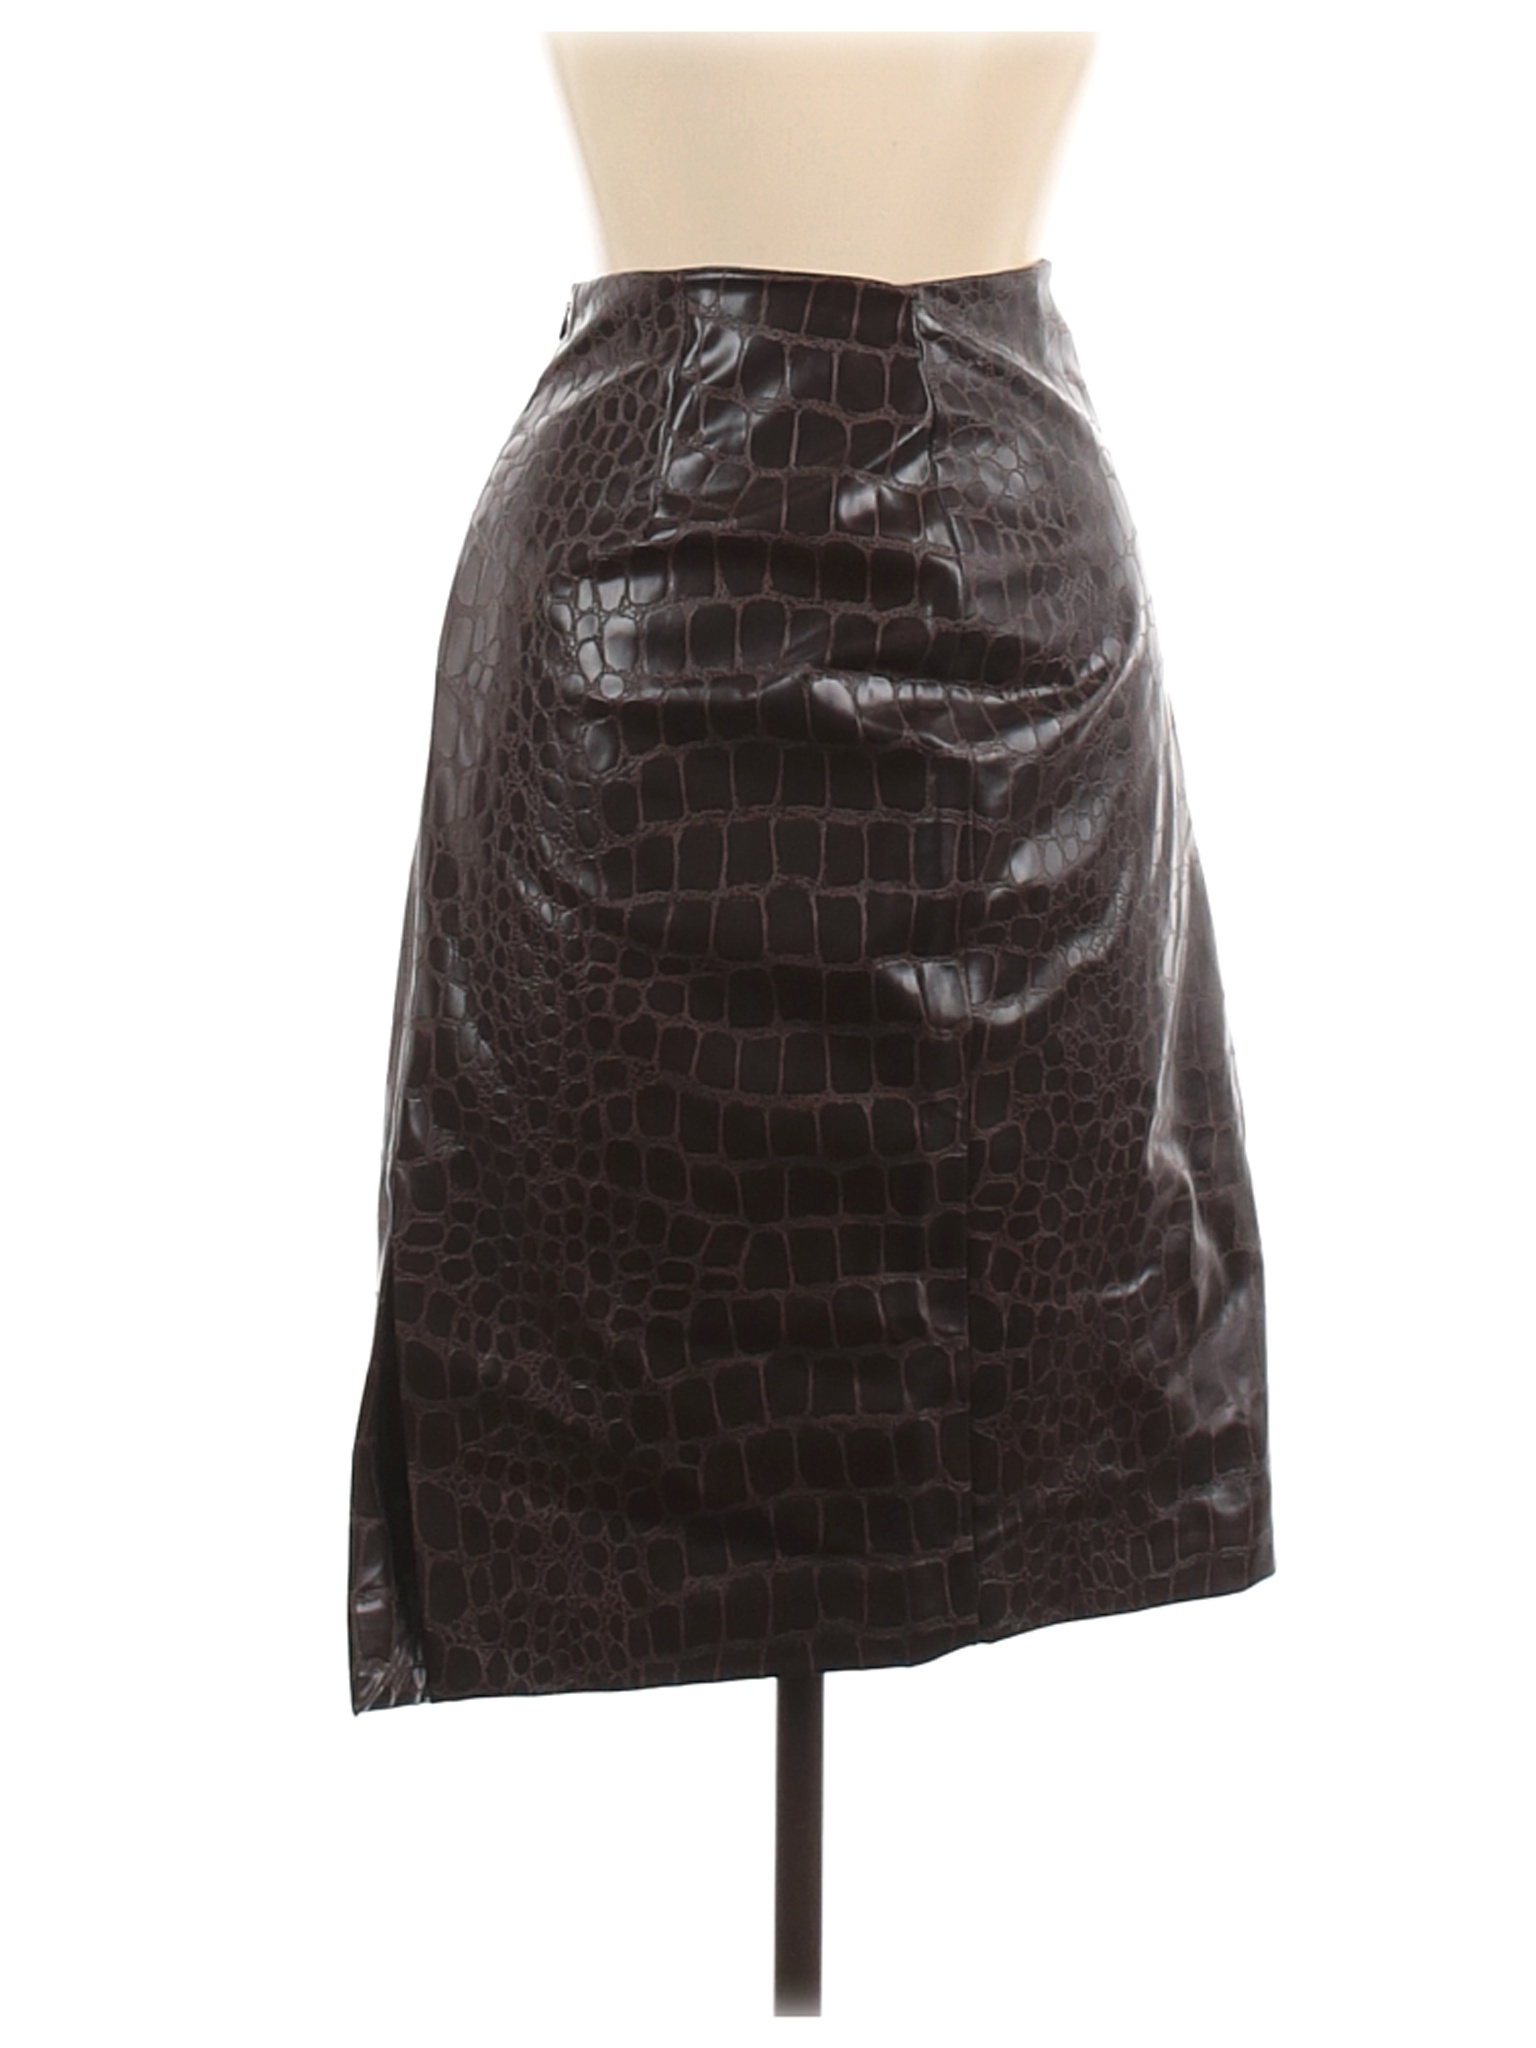 Zara Women Brown Faux Leather Skirt 8 | eBay